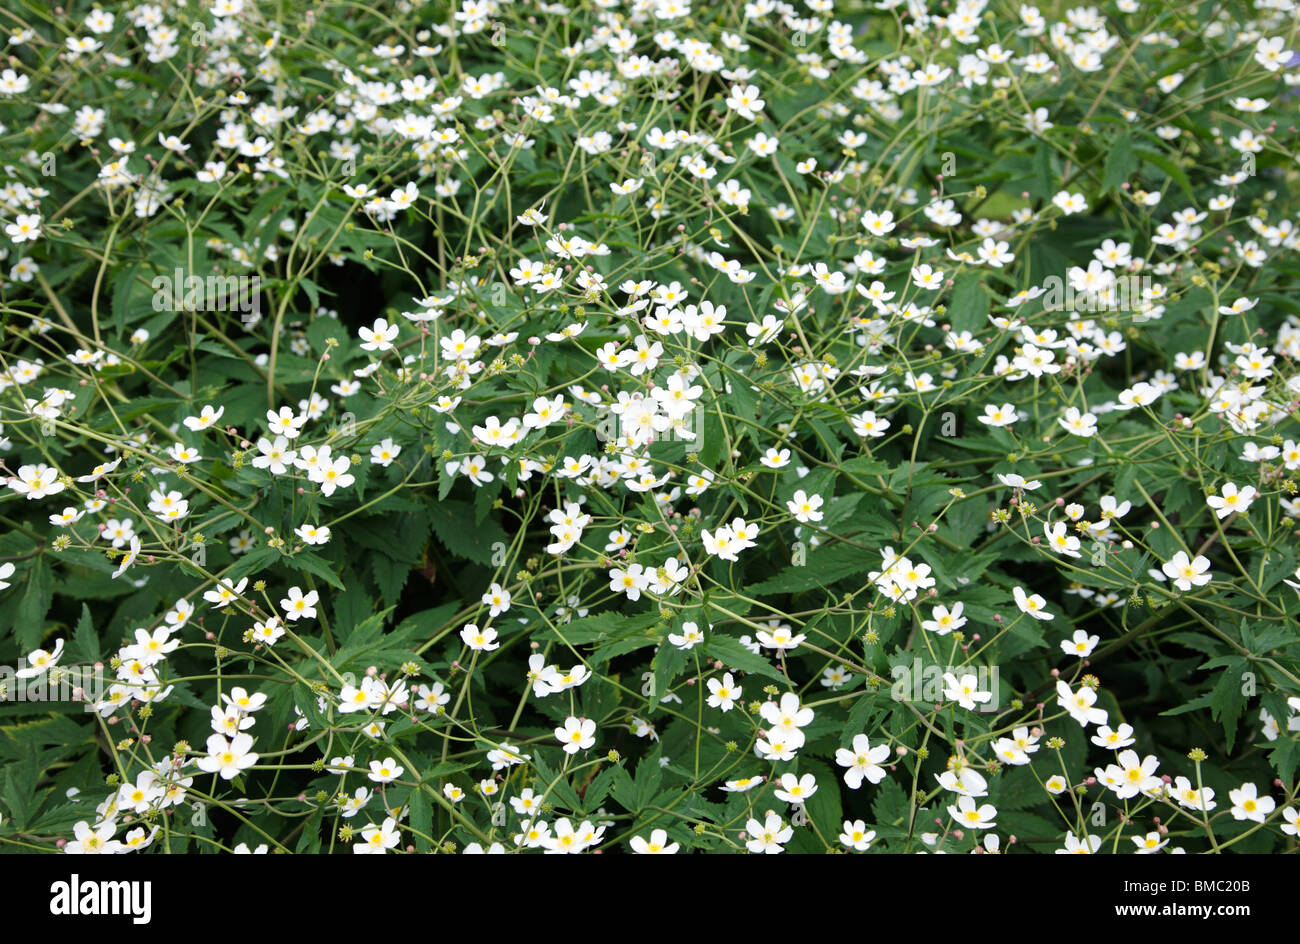 Ranunculus  aconitifolius Flore Pleno White Flower Stock Photo